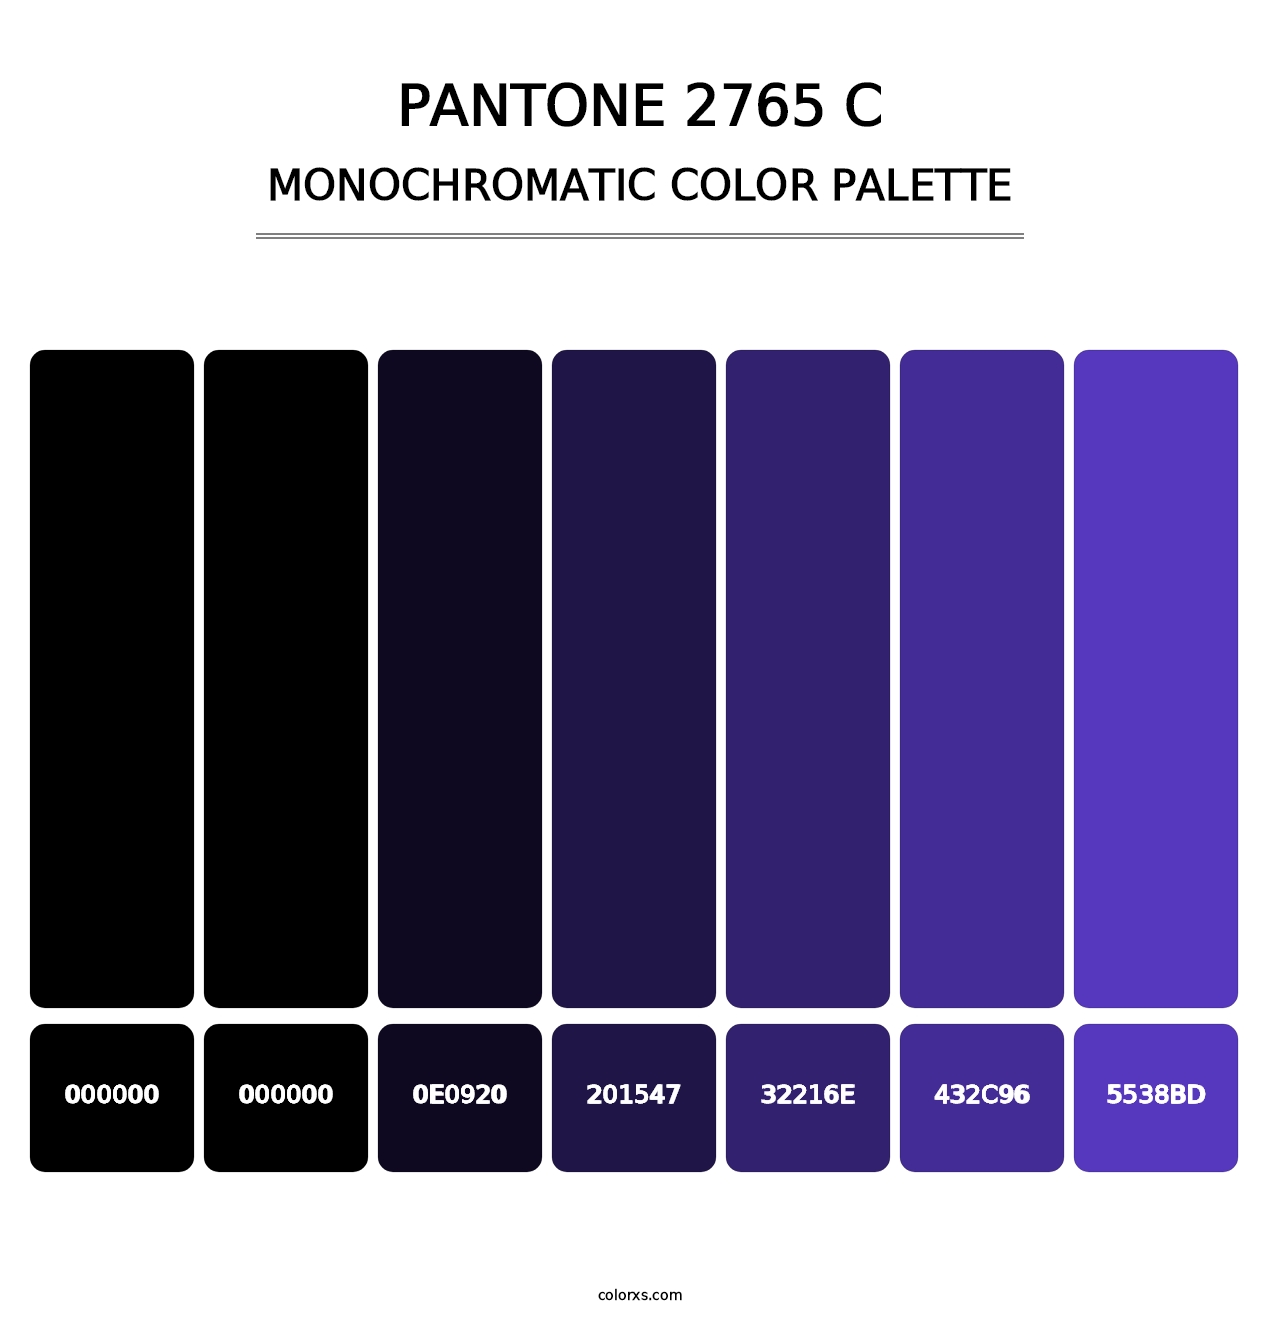 PANTONE 2765 C - Monochromatic Color Palette